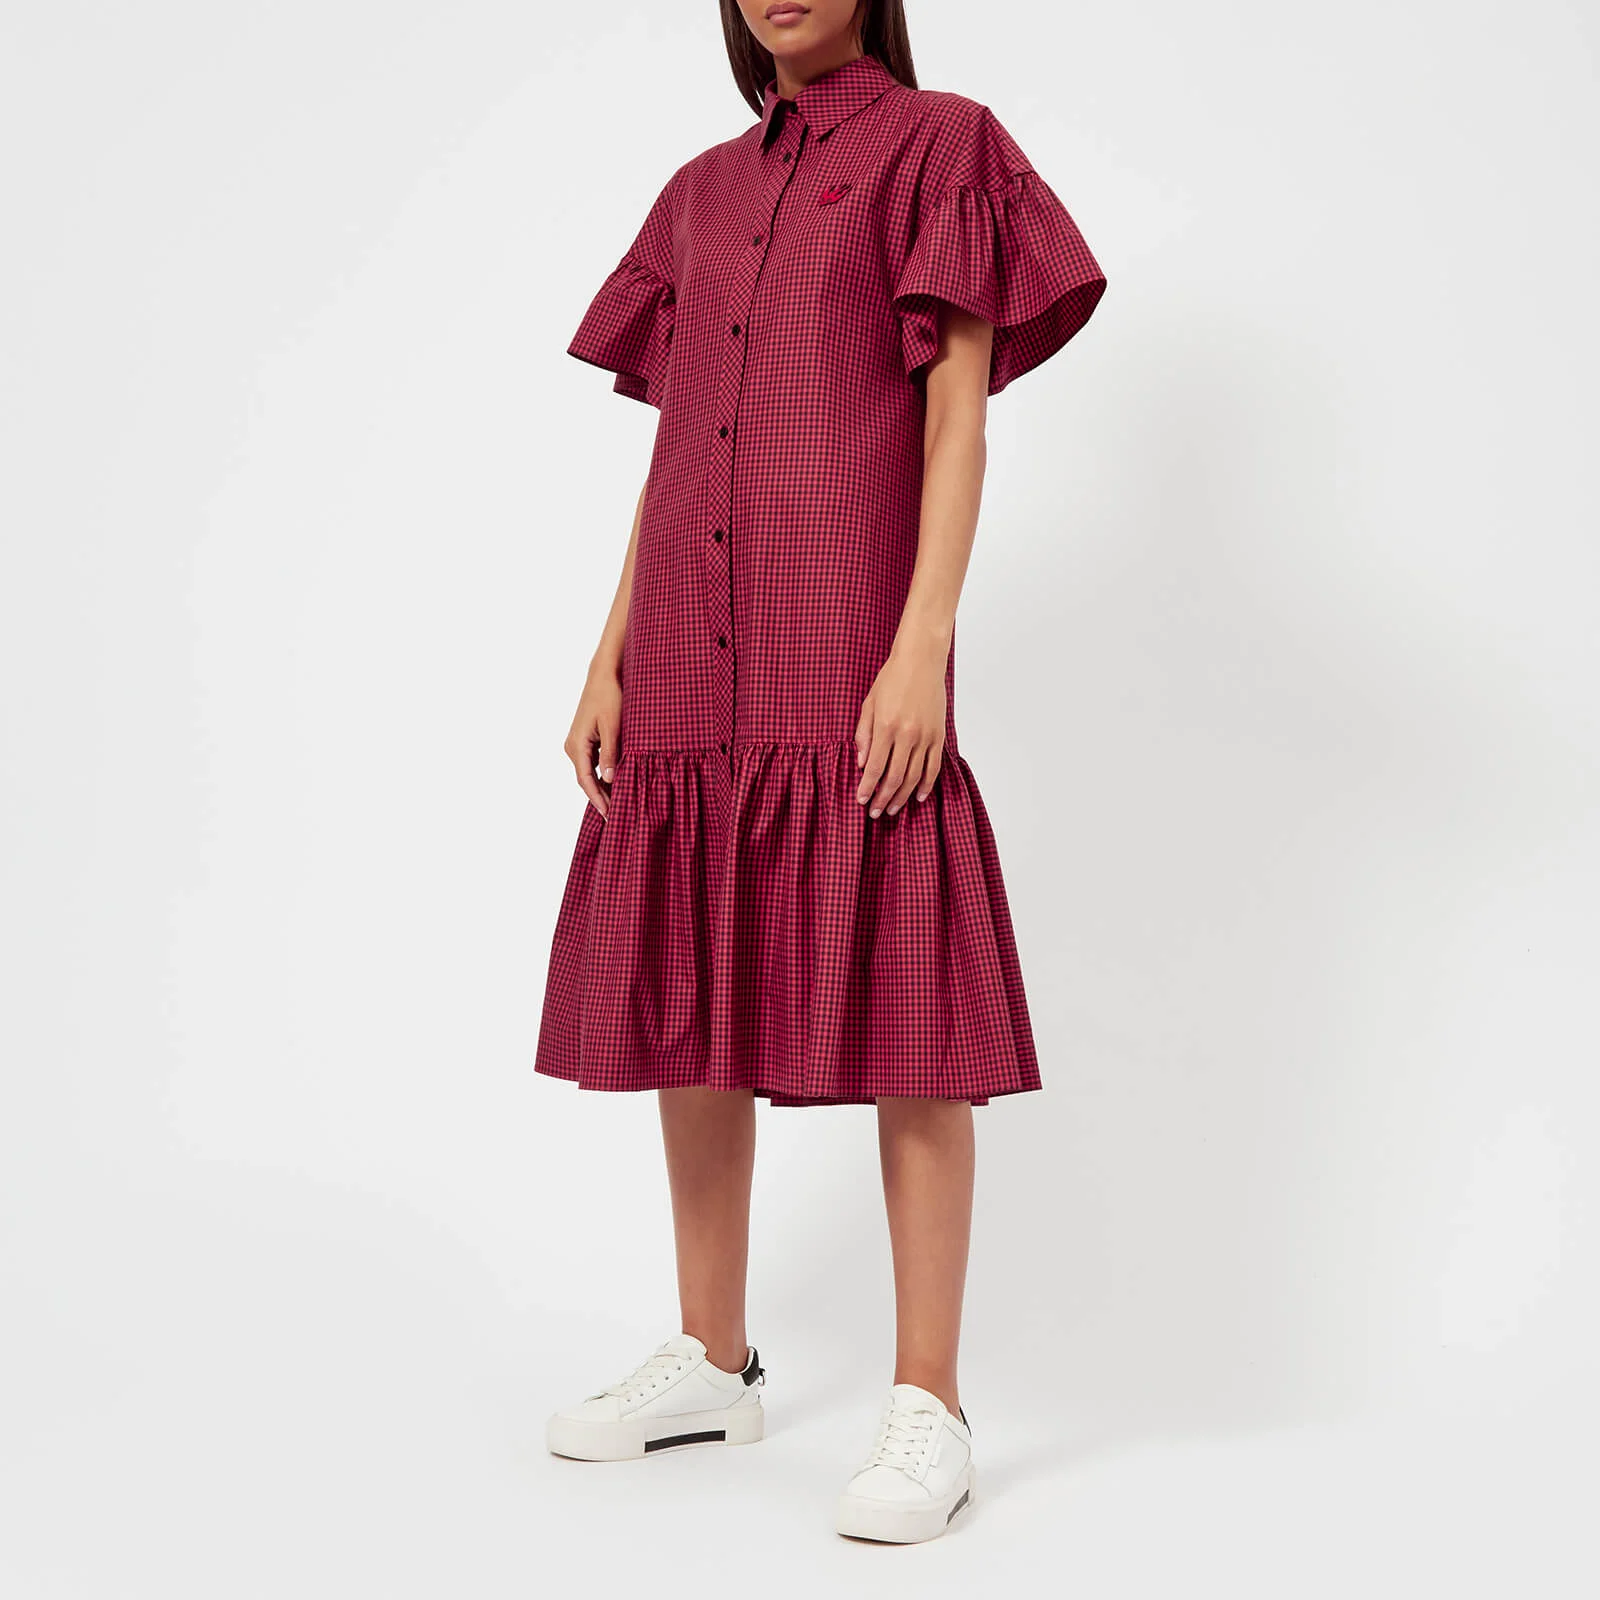 McQ Alexander McQueen Women's Short Bubble Sleeve Shirt Dress - Amp/Red Darkest Image 1